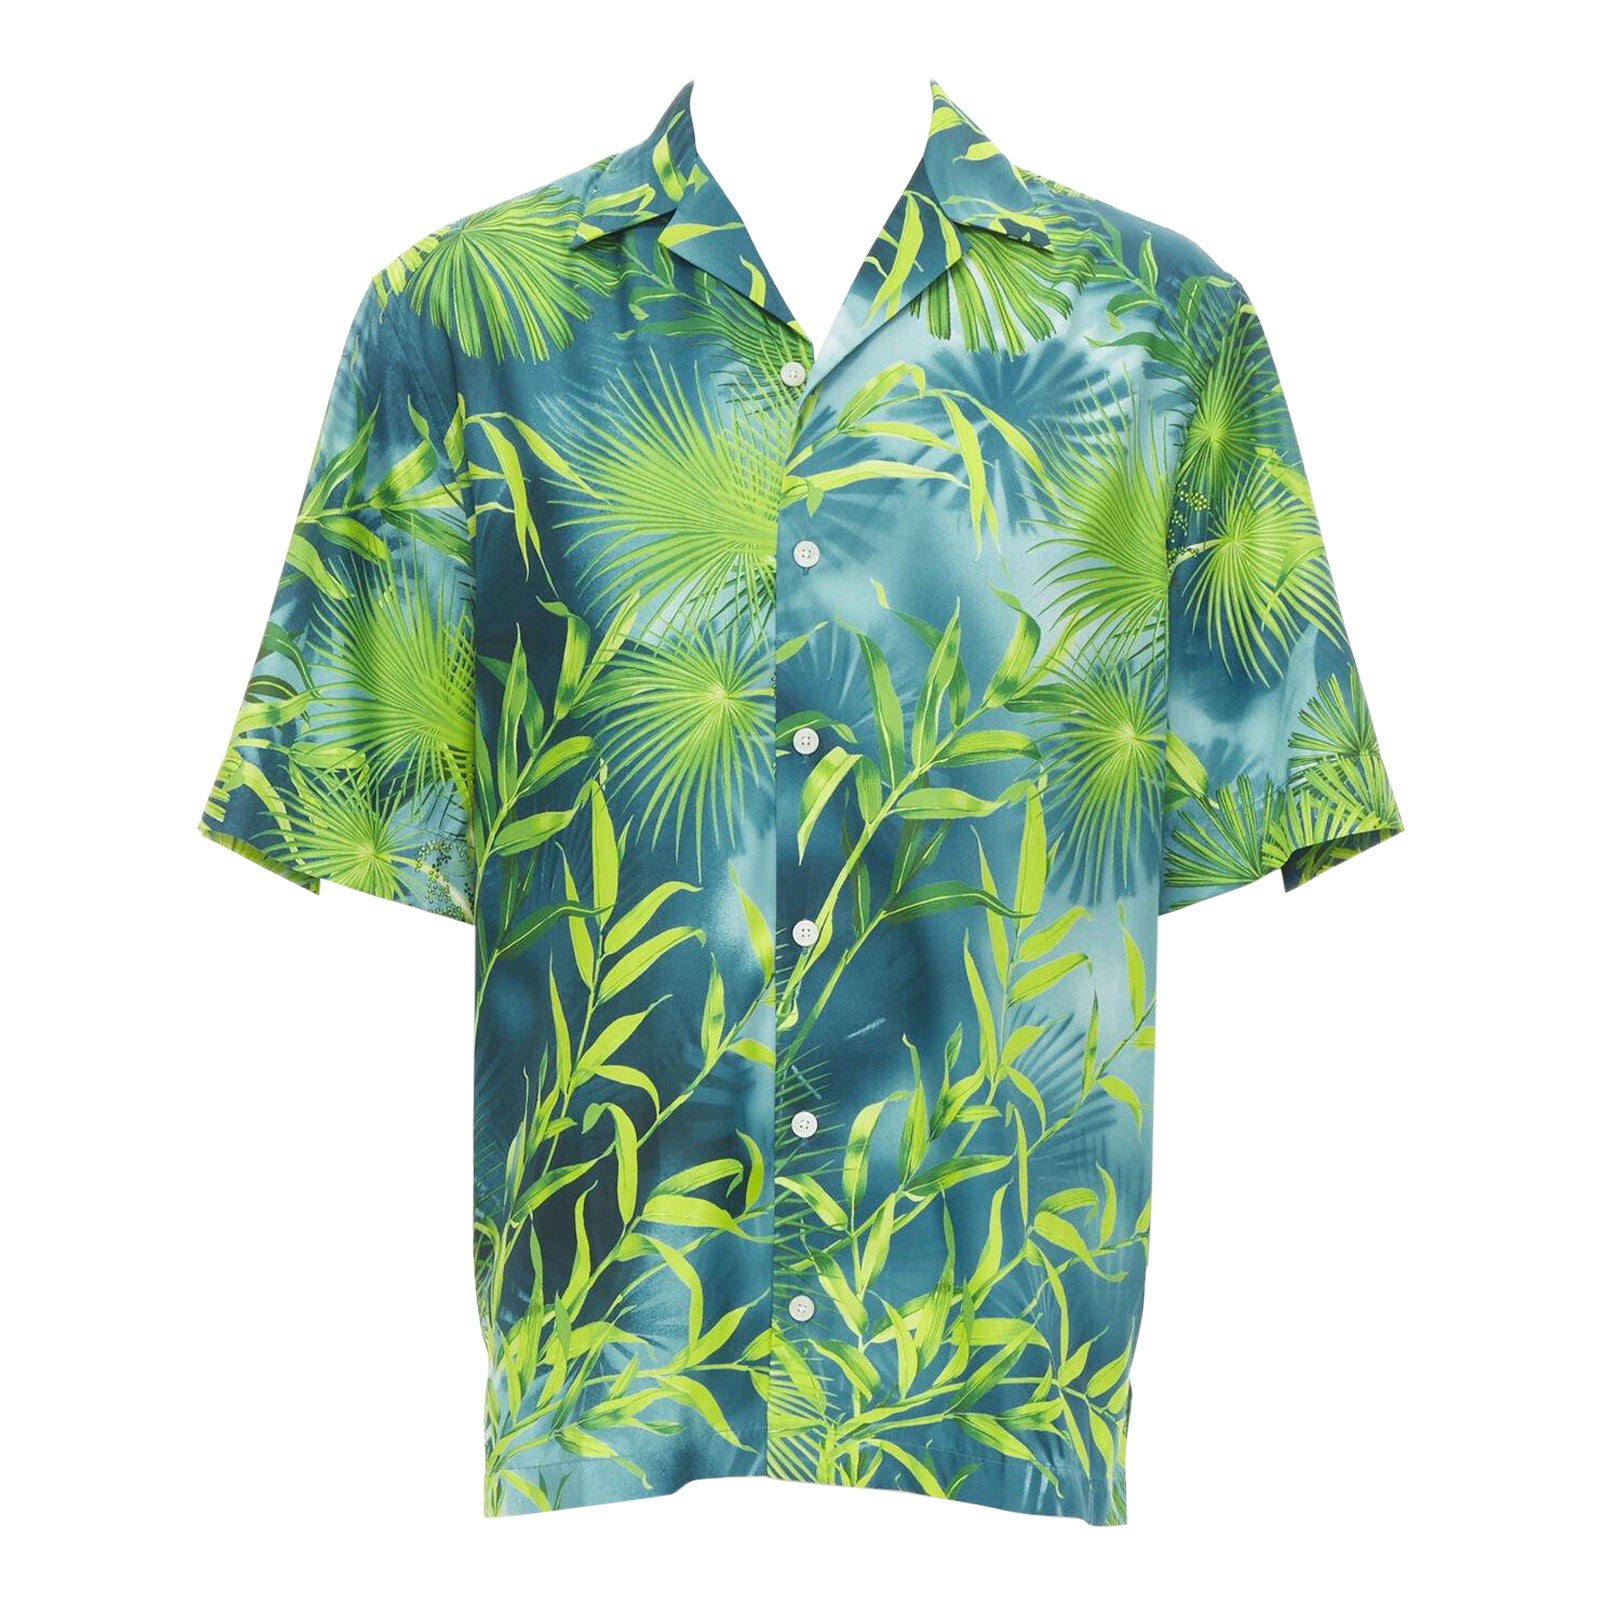 VERSACE 2020 Iconique chemise JLo vert Jungle imprimé tropical EU38 S en vente